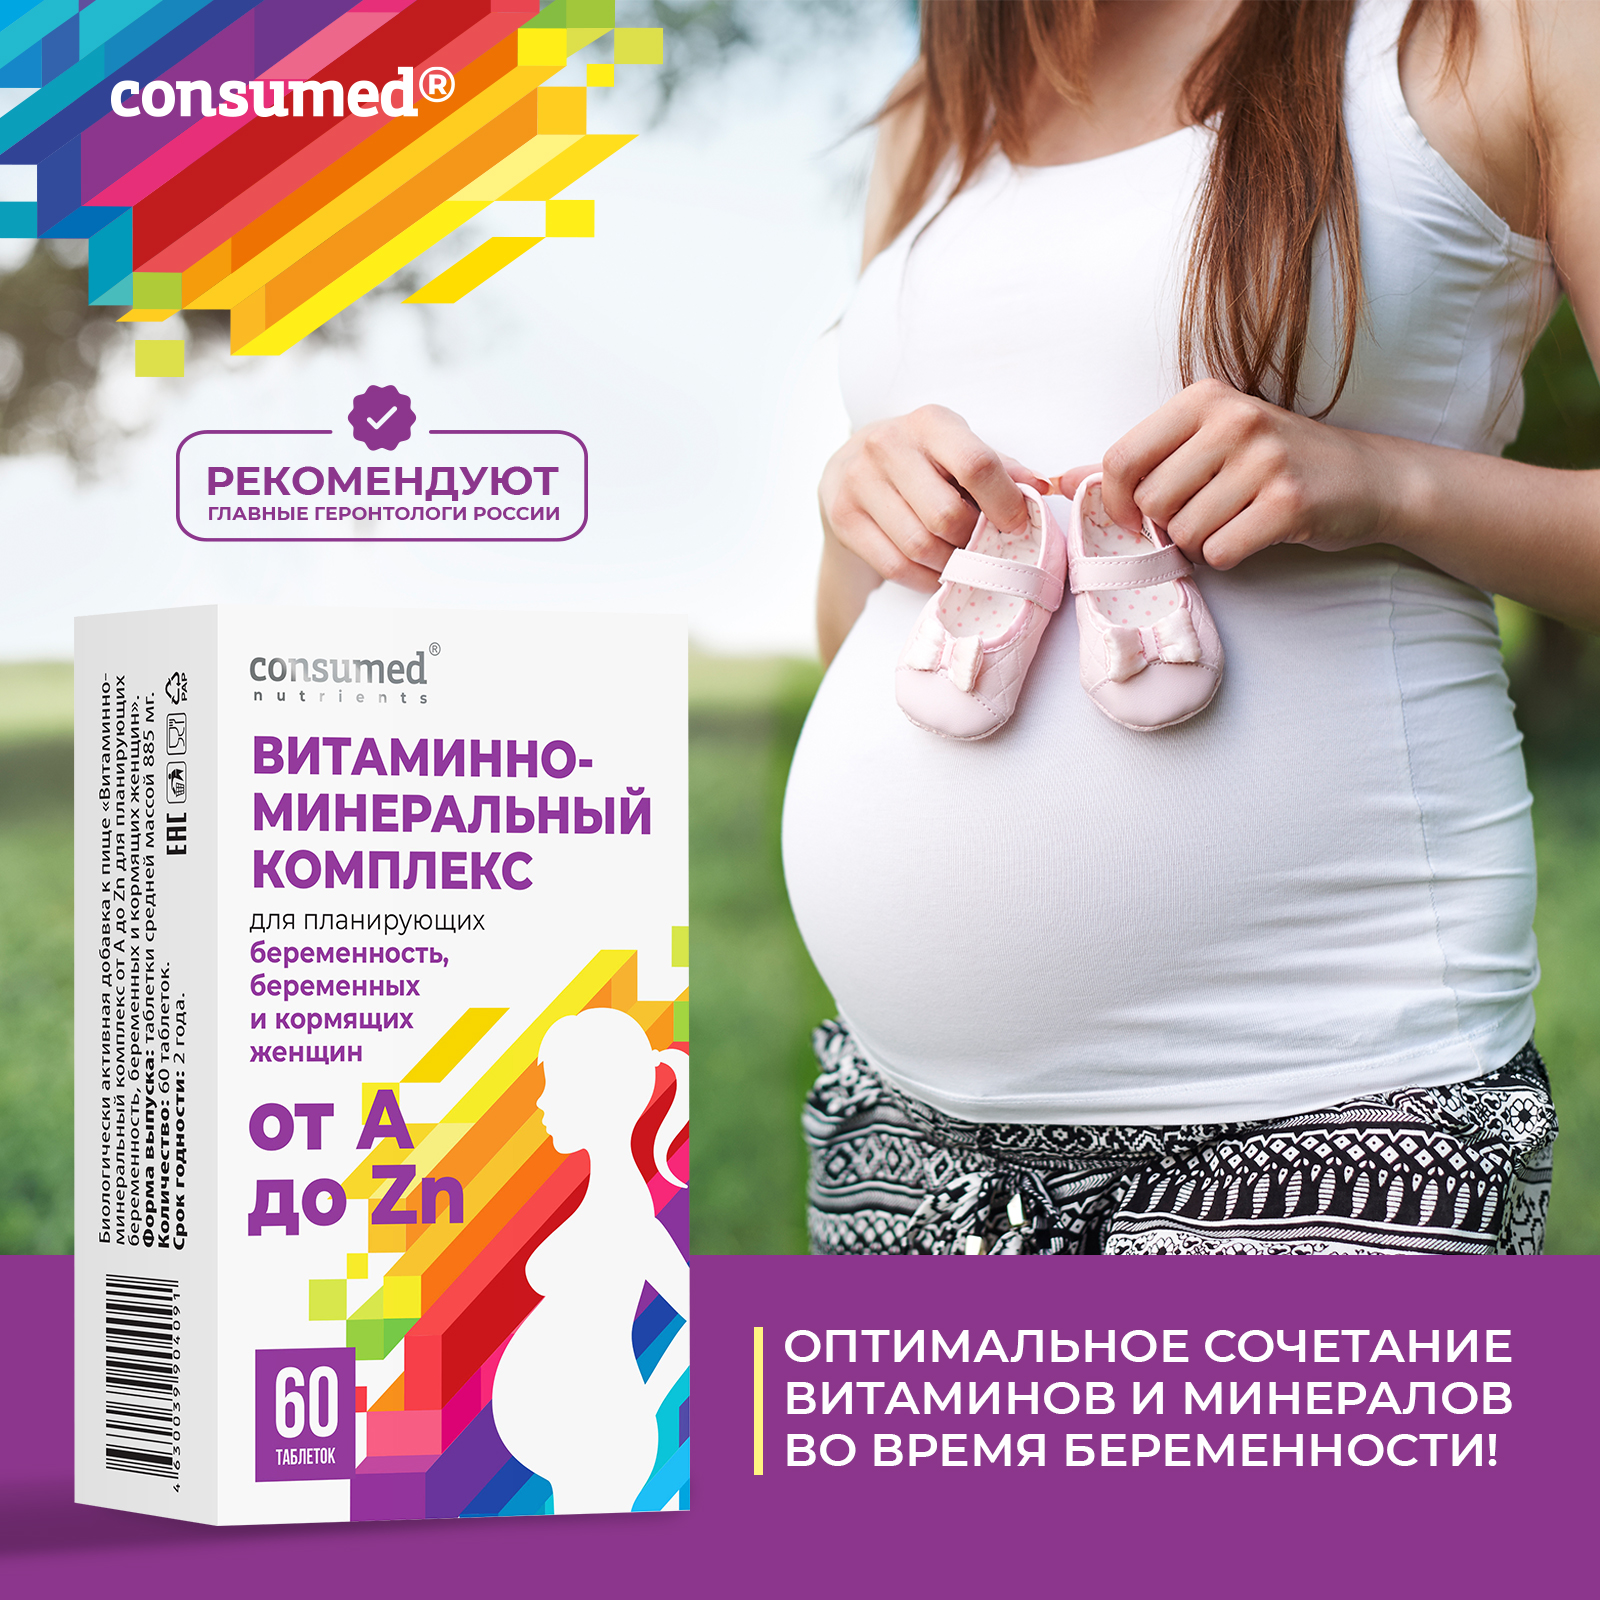 Витаминно-минеральный комплекс от А до Zn для планирующих беременность,  беременных и кормящих женщин, таб. №60 - инструкция, состав, цена на  официальном сайте Consumed